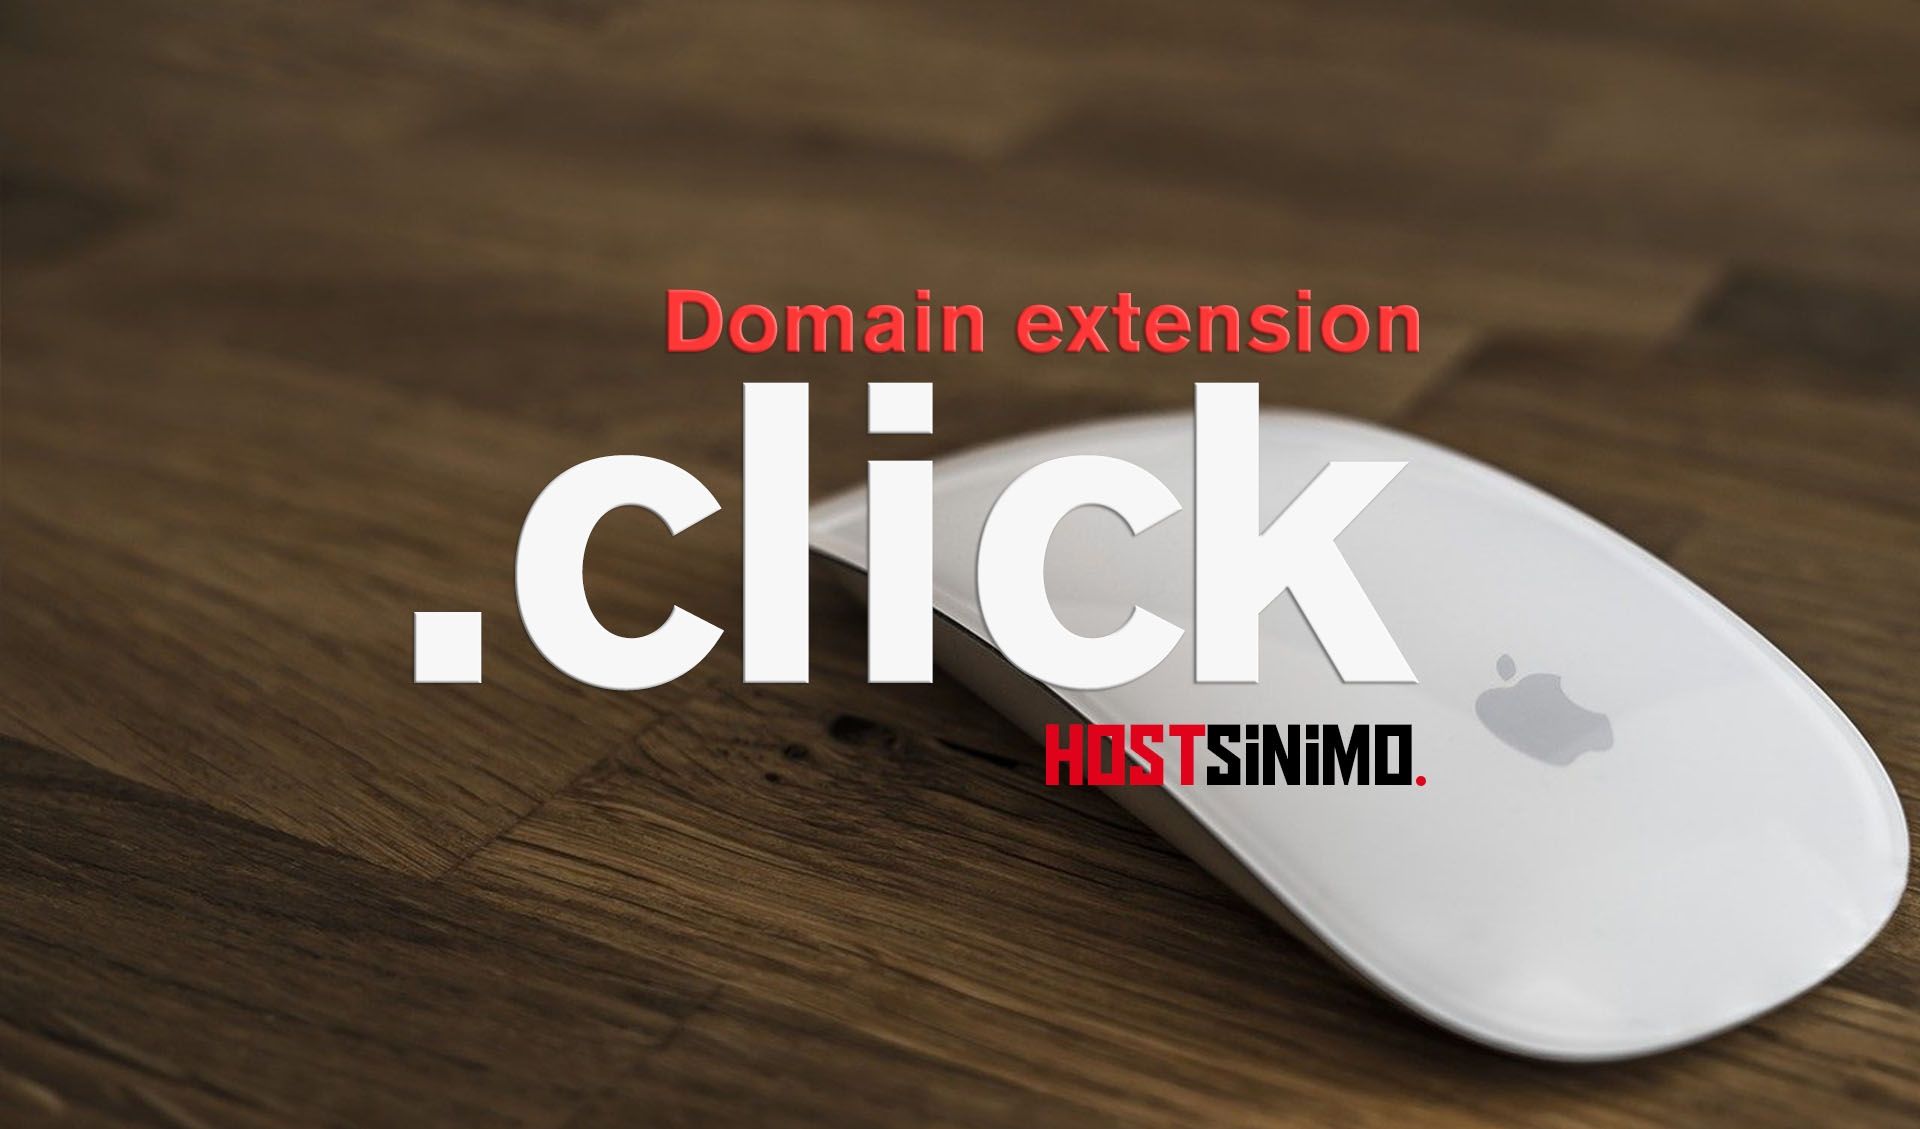 Domain .click alternatif kepada domain .com